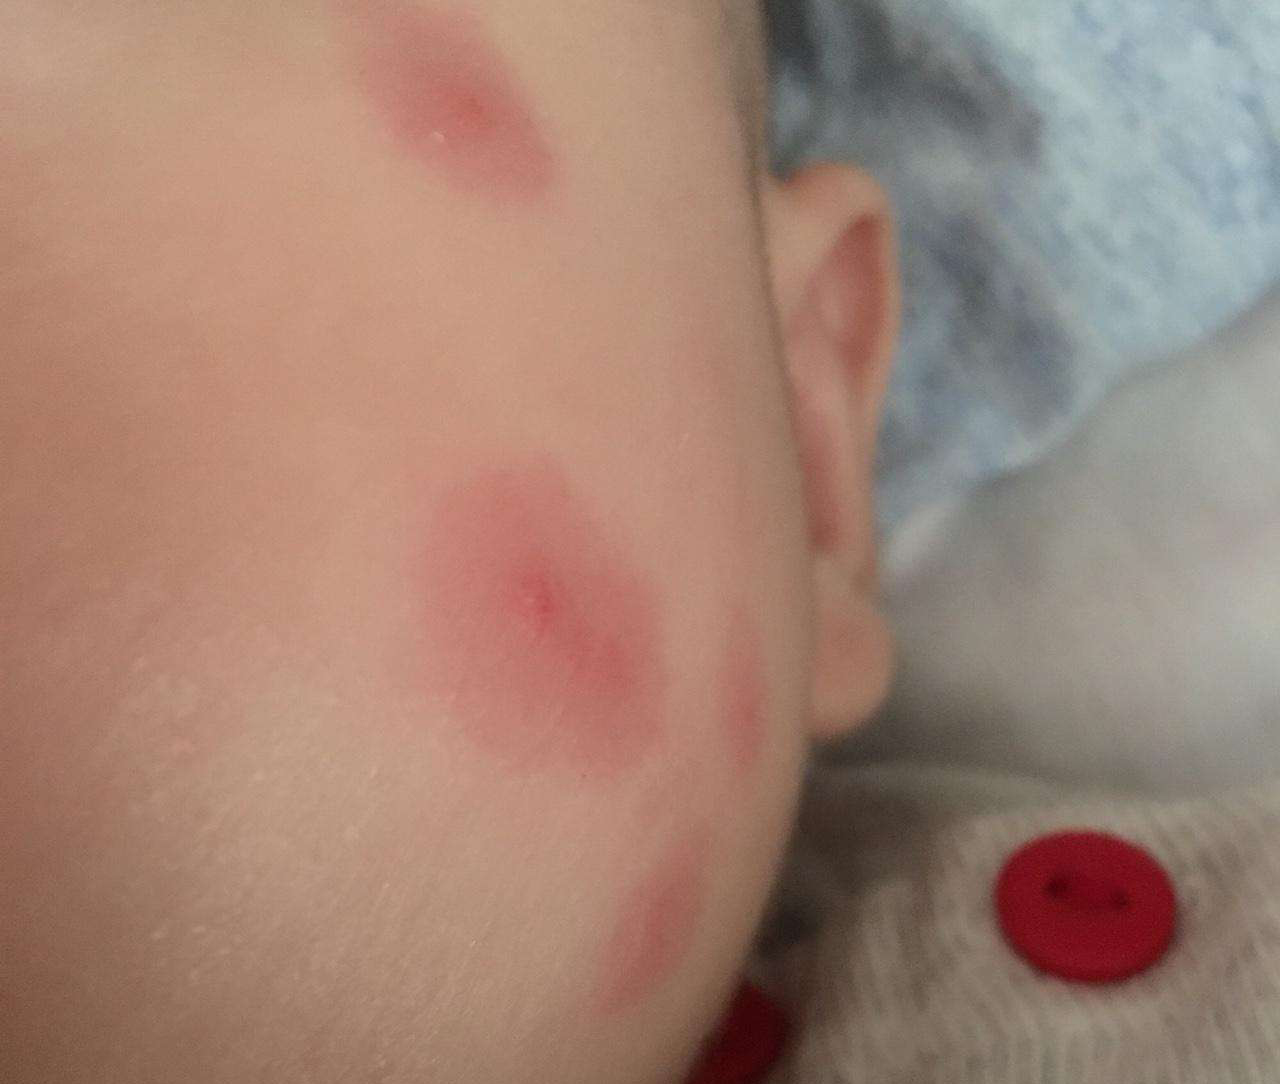 宝宝蚊虫叮咬宝宝细皮嫩肉,蚊子很容易刺穿皮肤,相比较起来,大人的